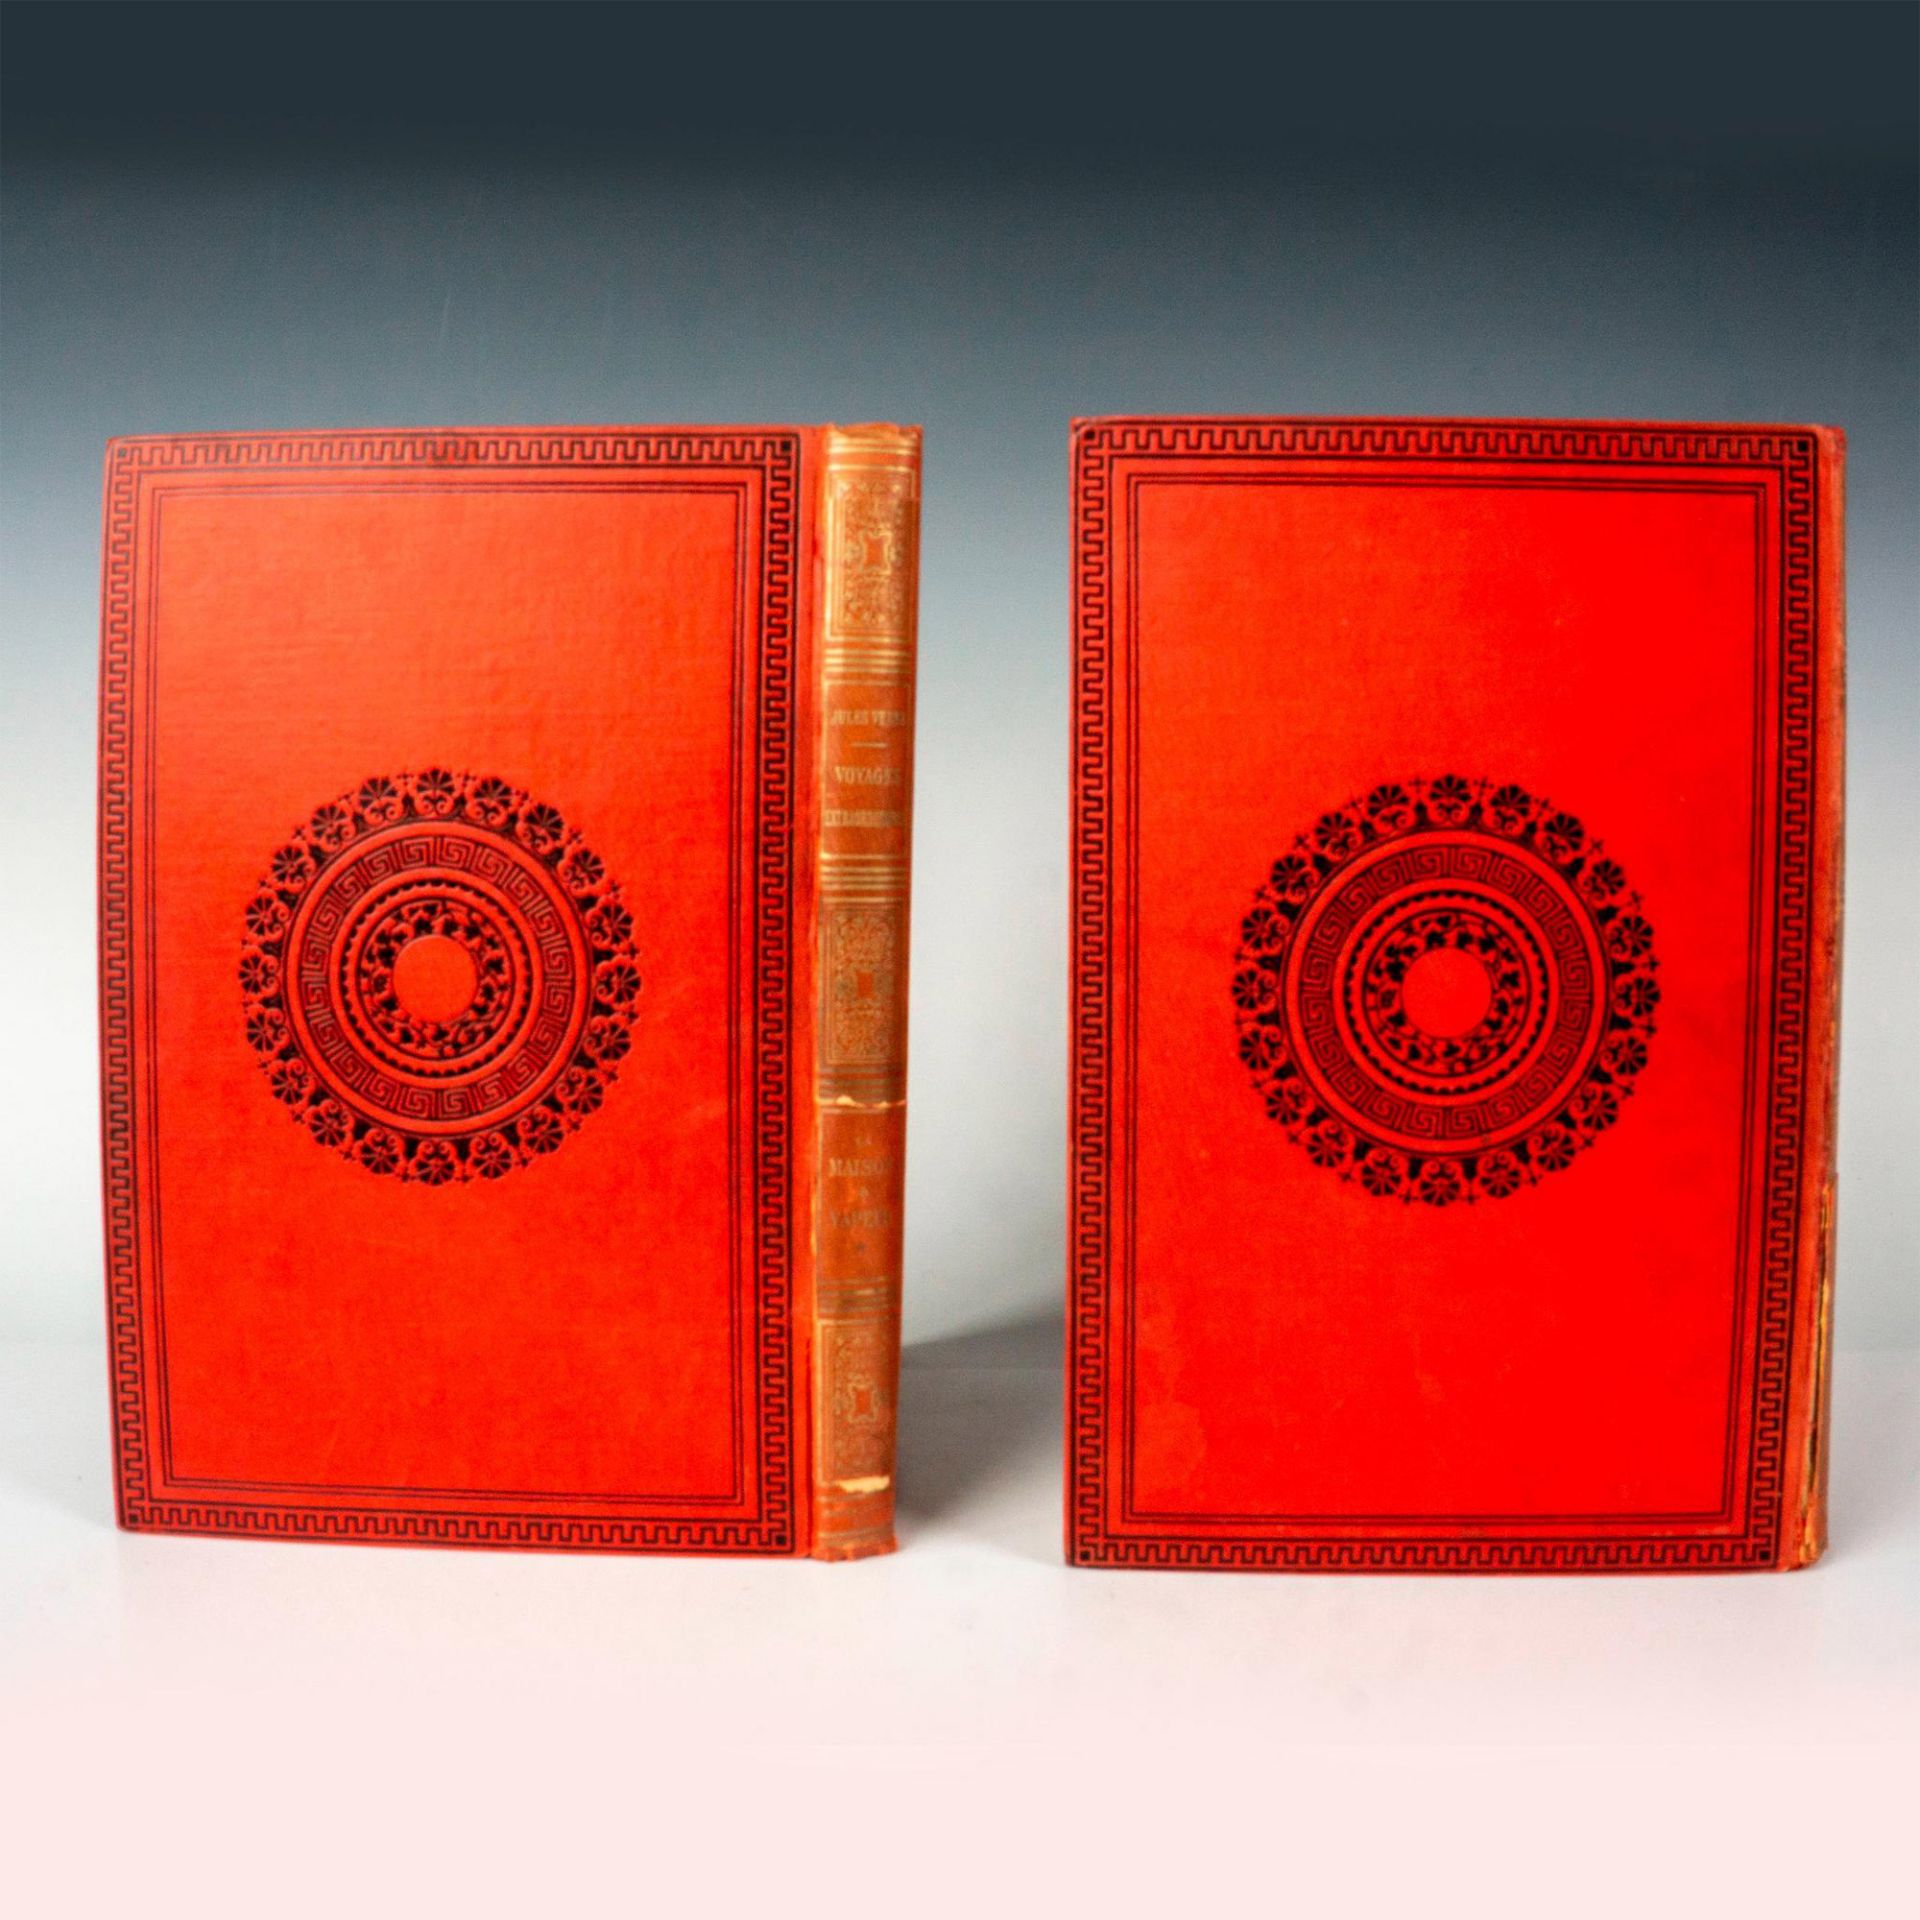 Jules Verne, 2 Vols. La Maison a Vapeur, Initiales Argentees - Image 2 of 3